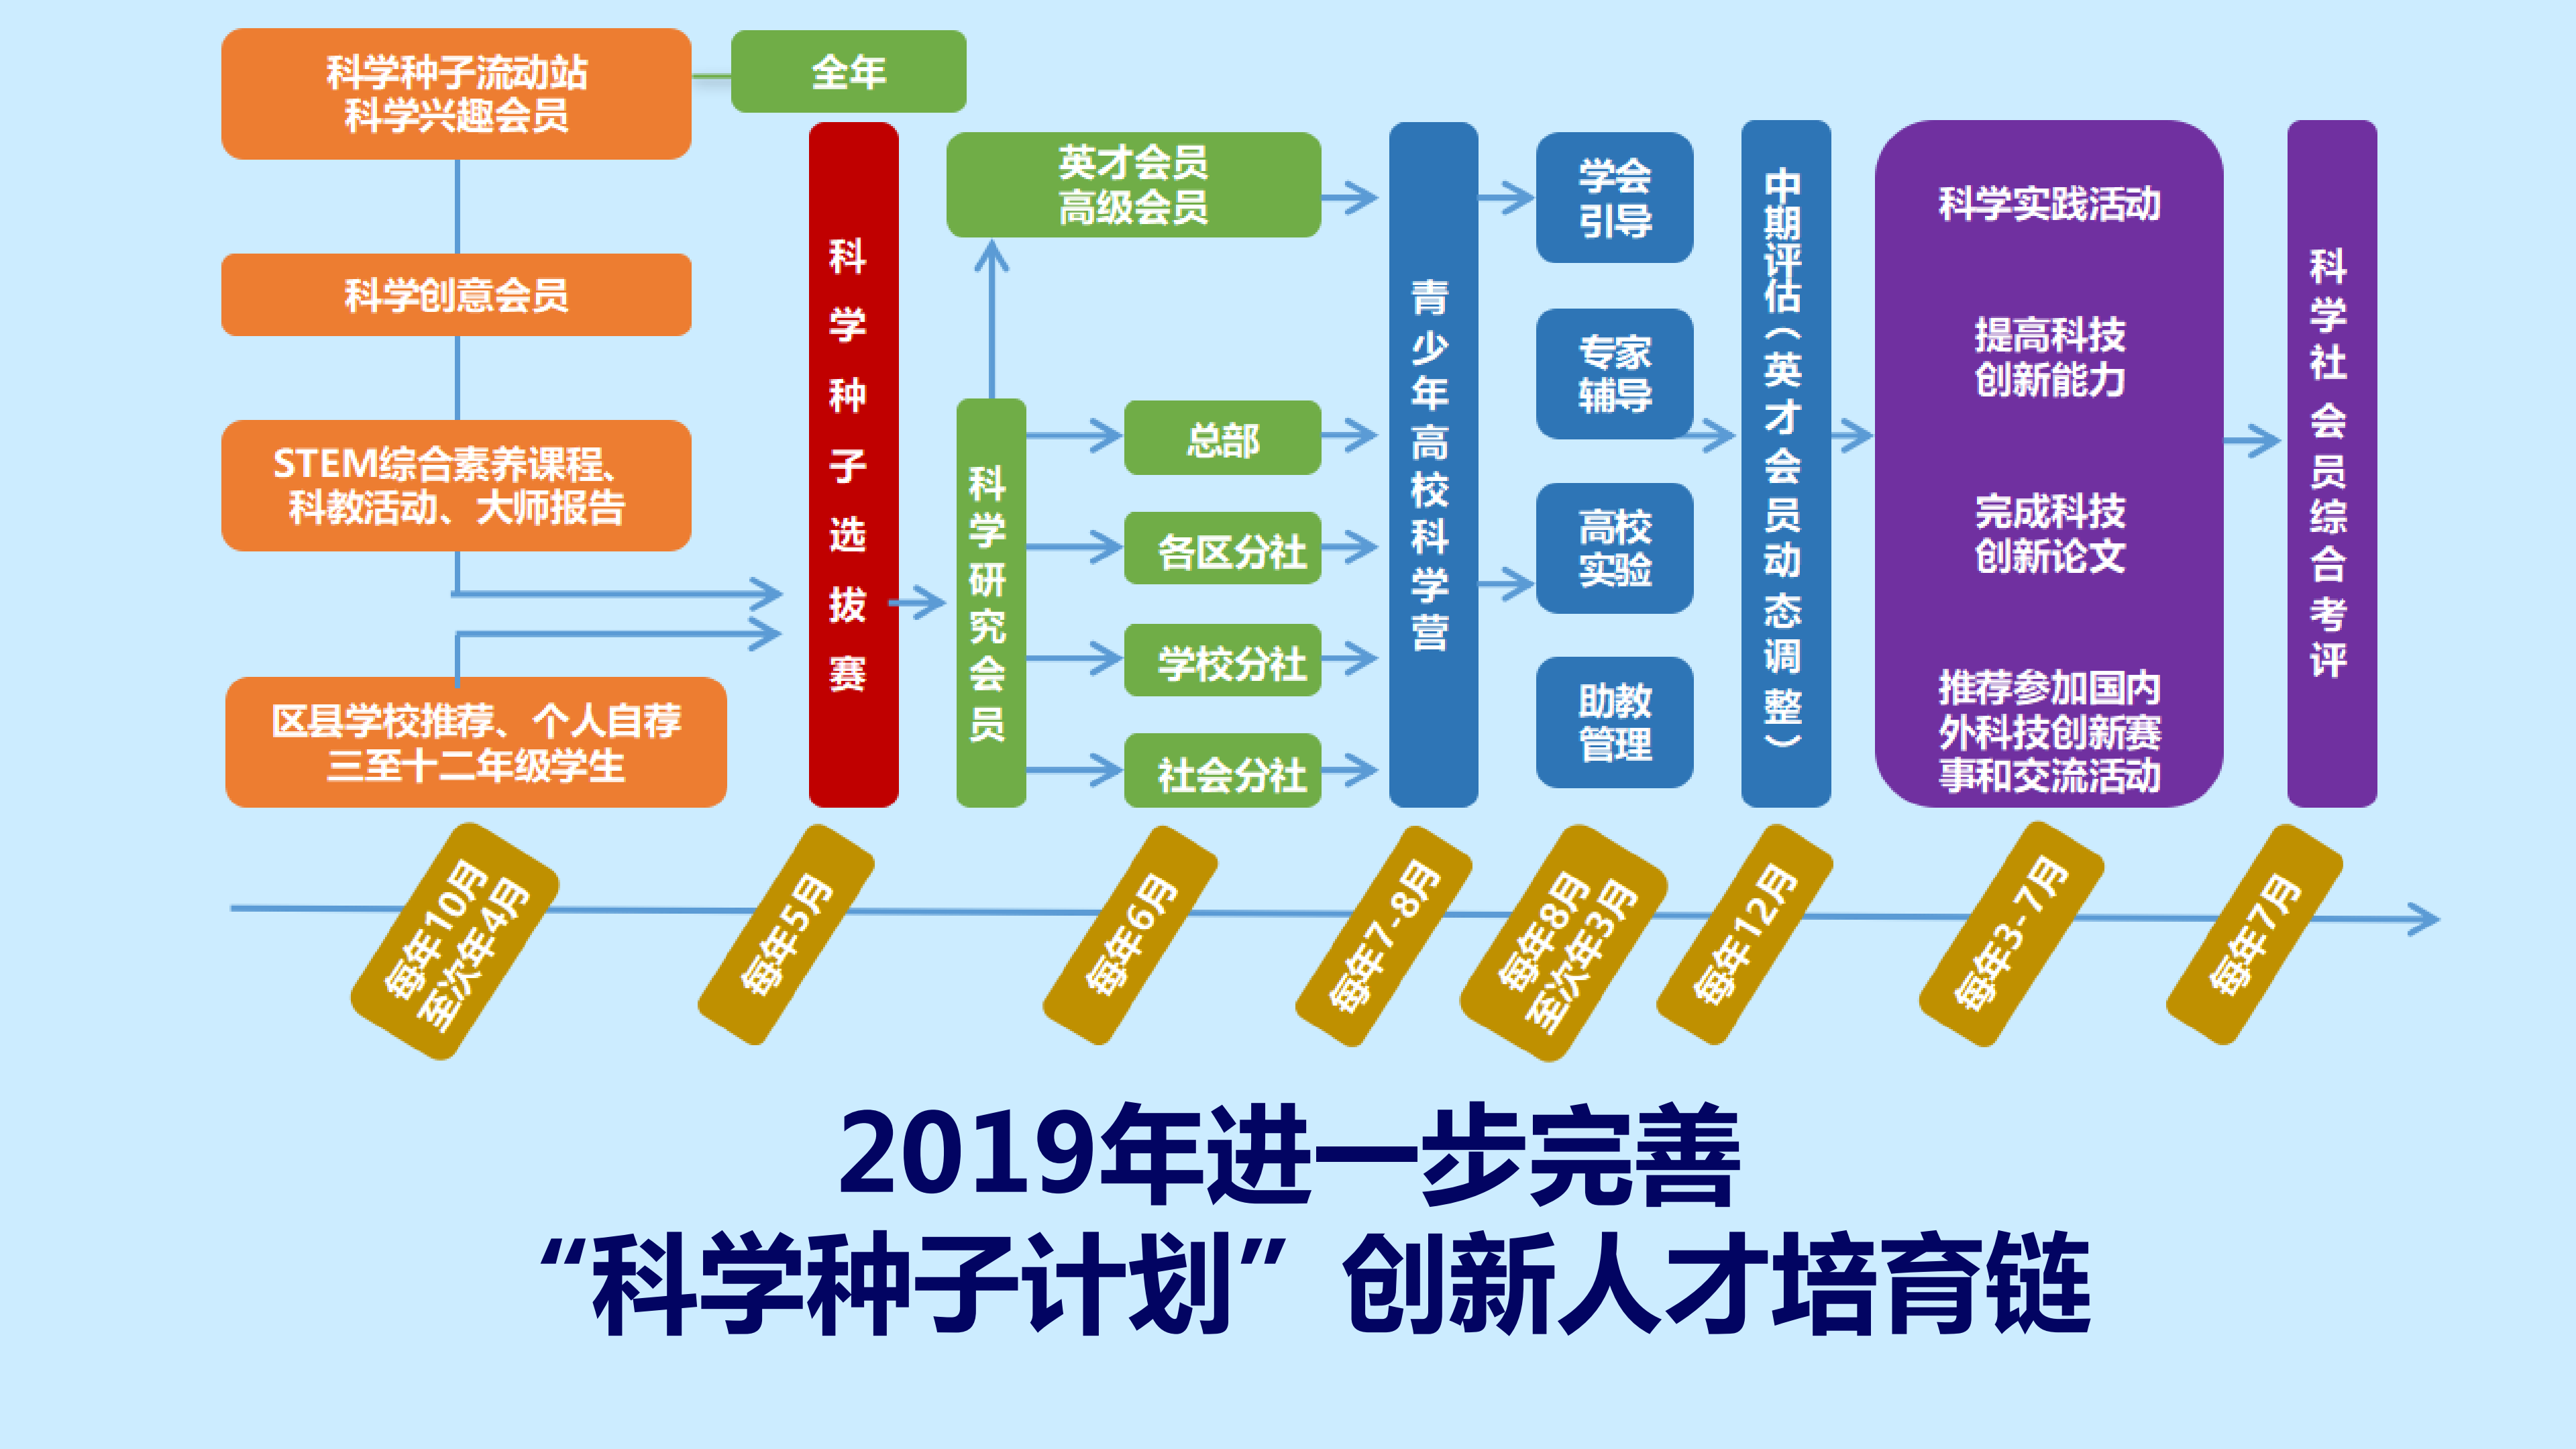 2019级上海青少年科学社创意会员开始招生啦(已改)(2)_17.png